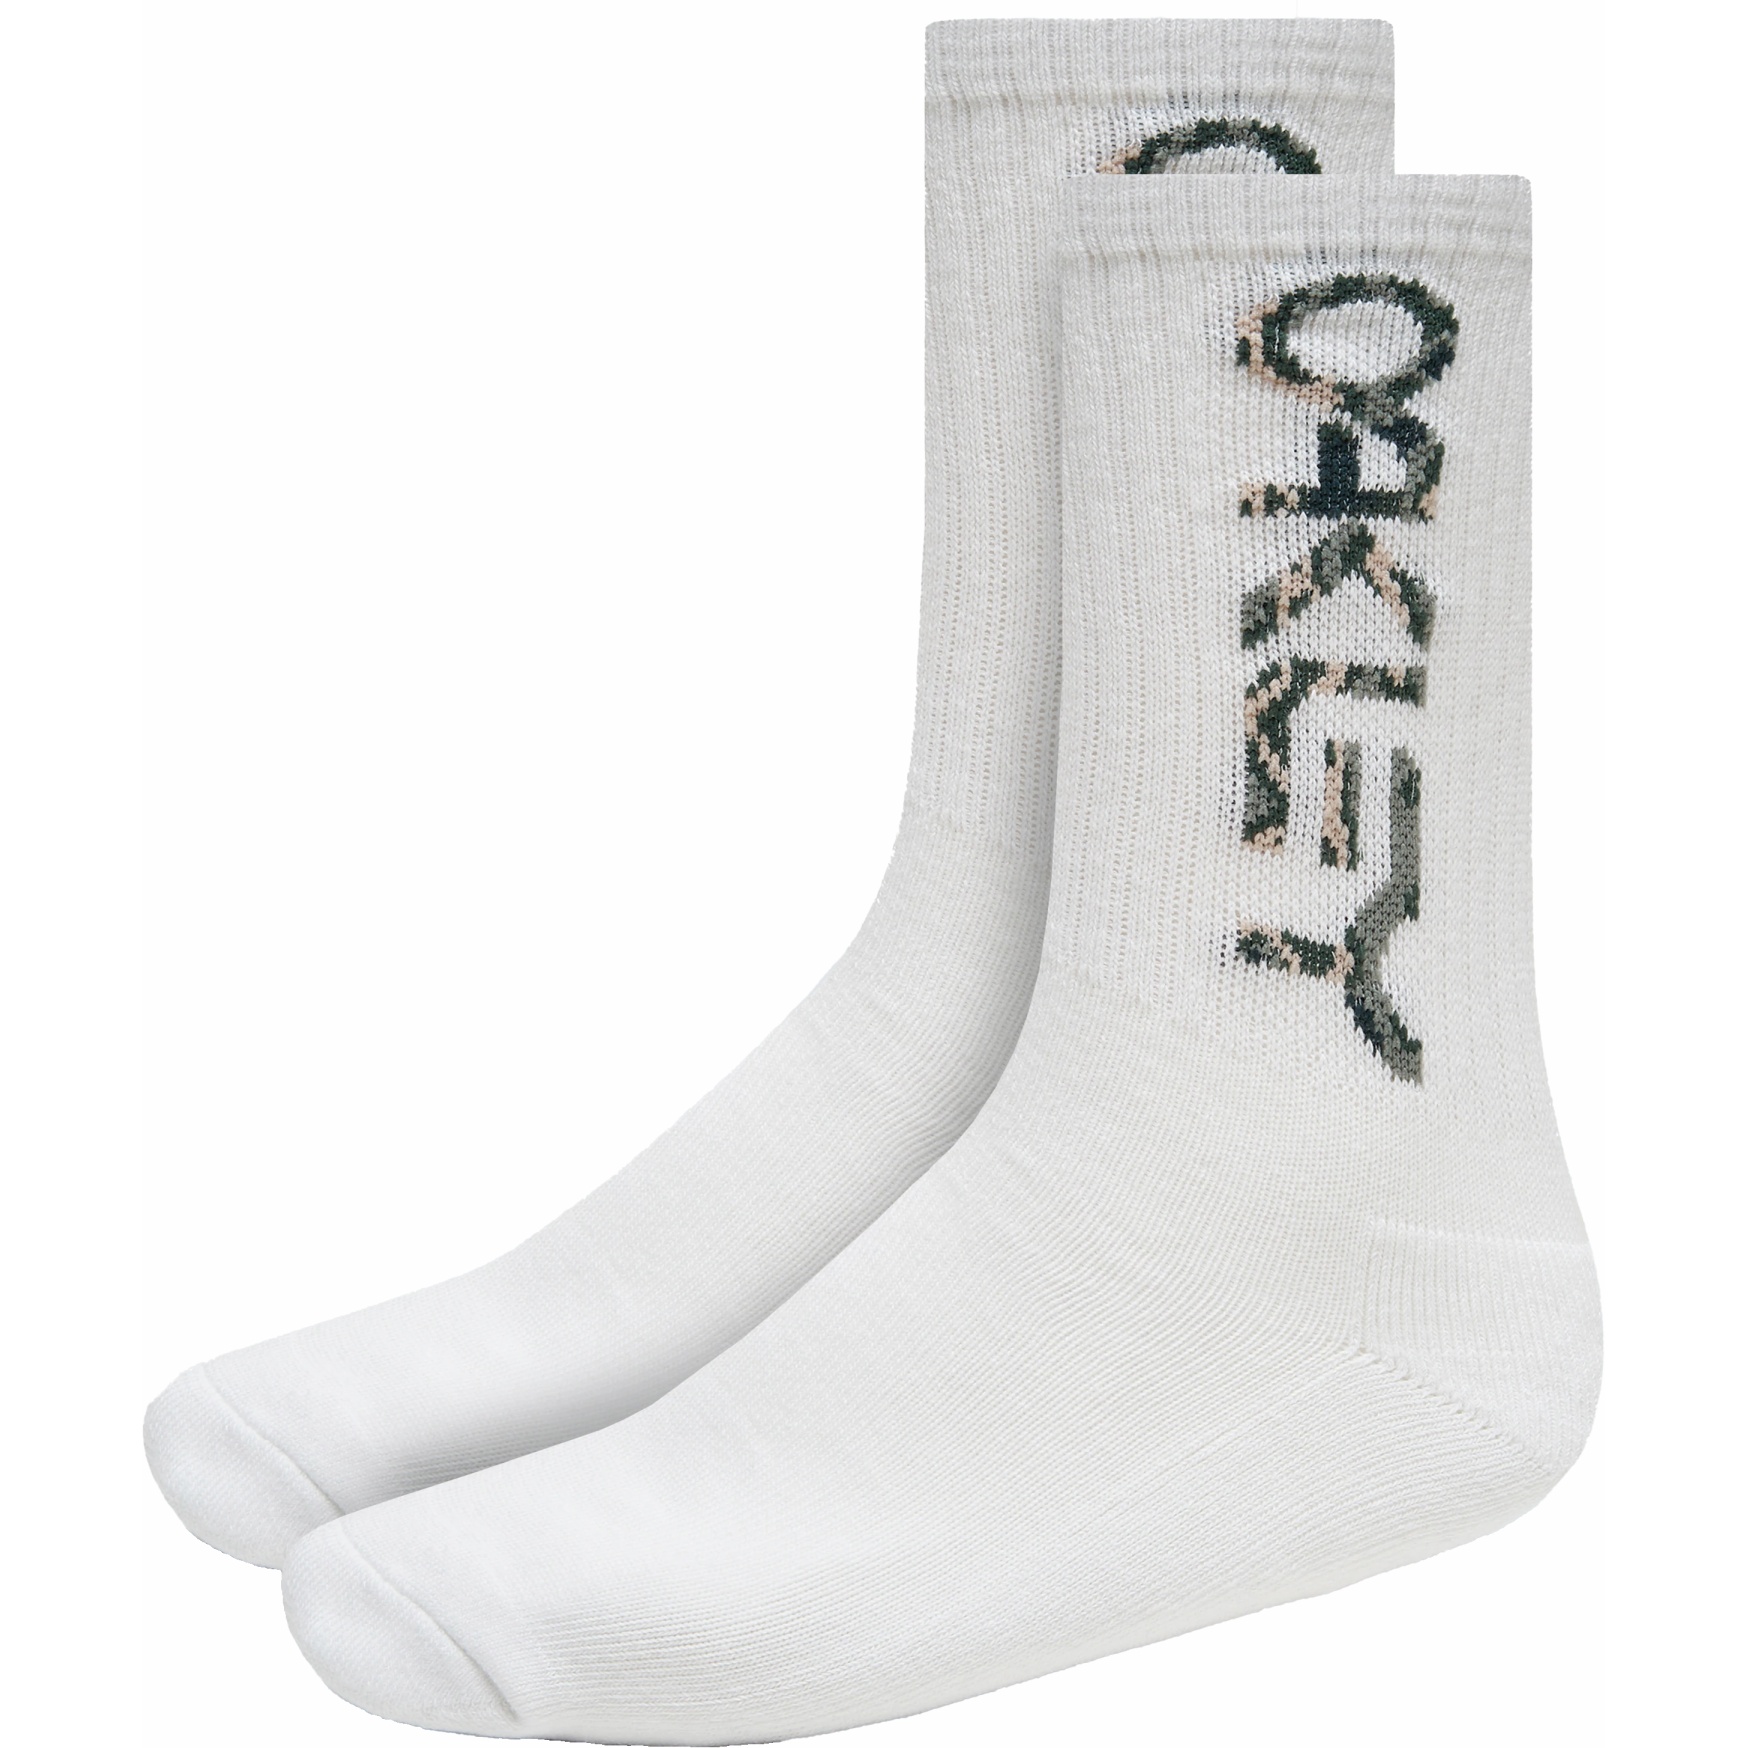 Produktbild von Oakley B1B Socken 2.0 (3 Paar) - Weiß